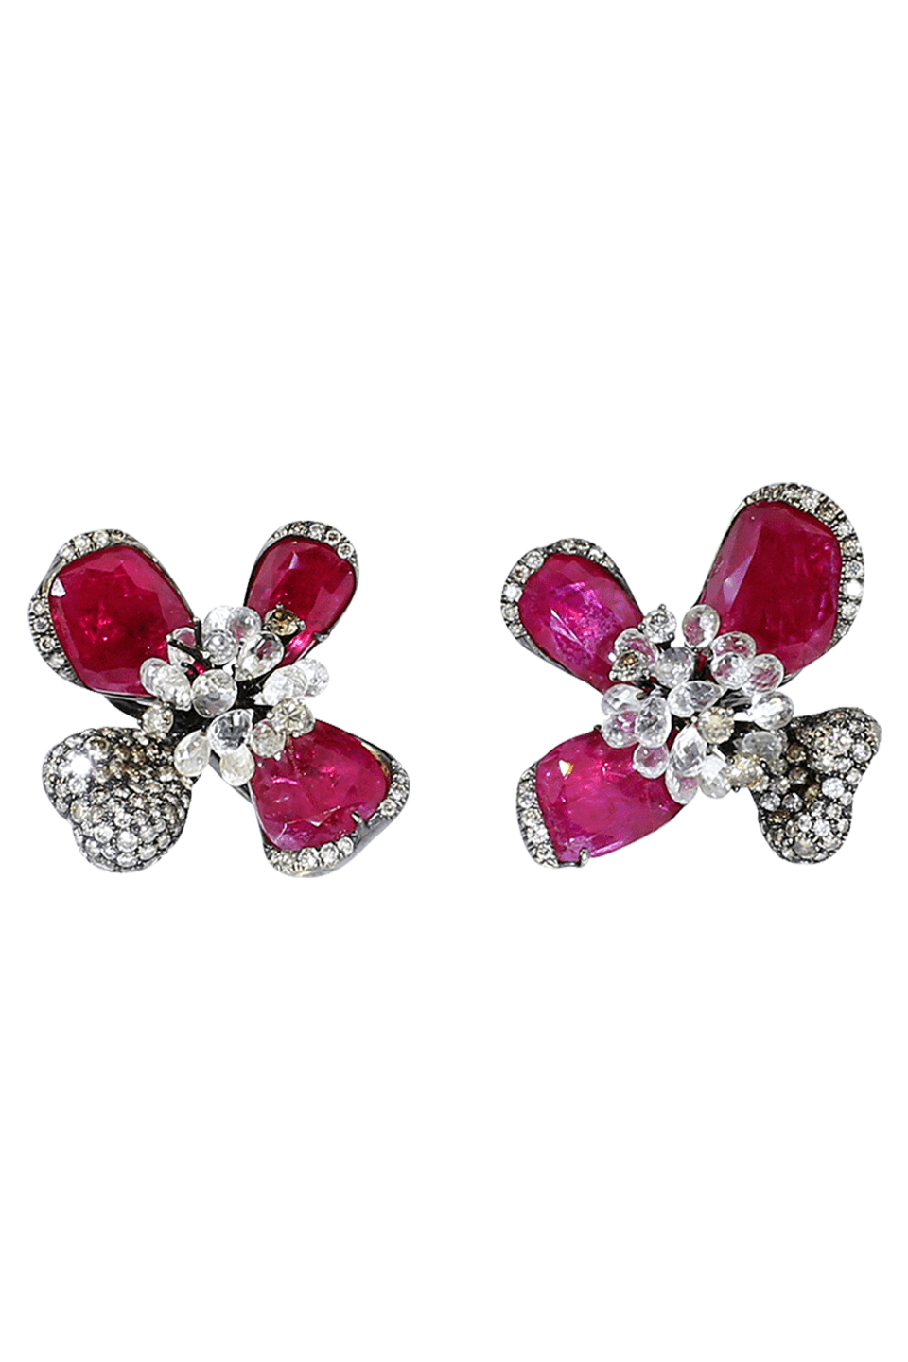 ARUNASHI-Ruby Orchid Earrings-BLKGOLD